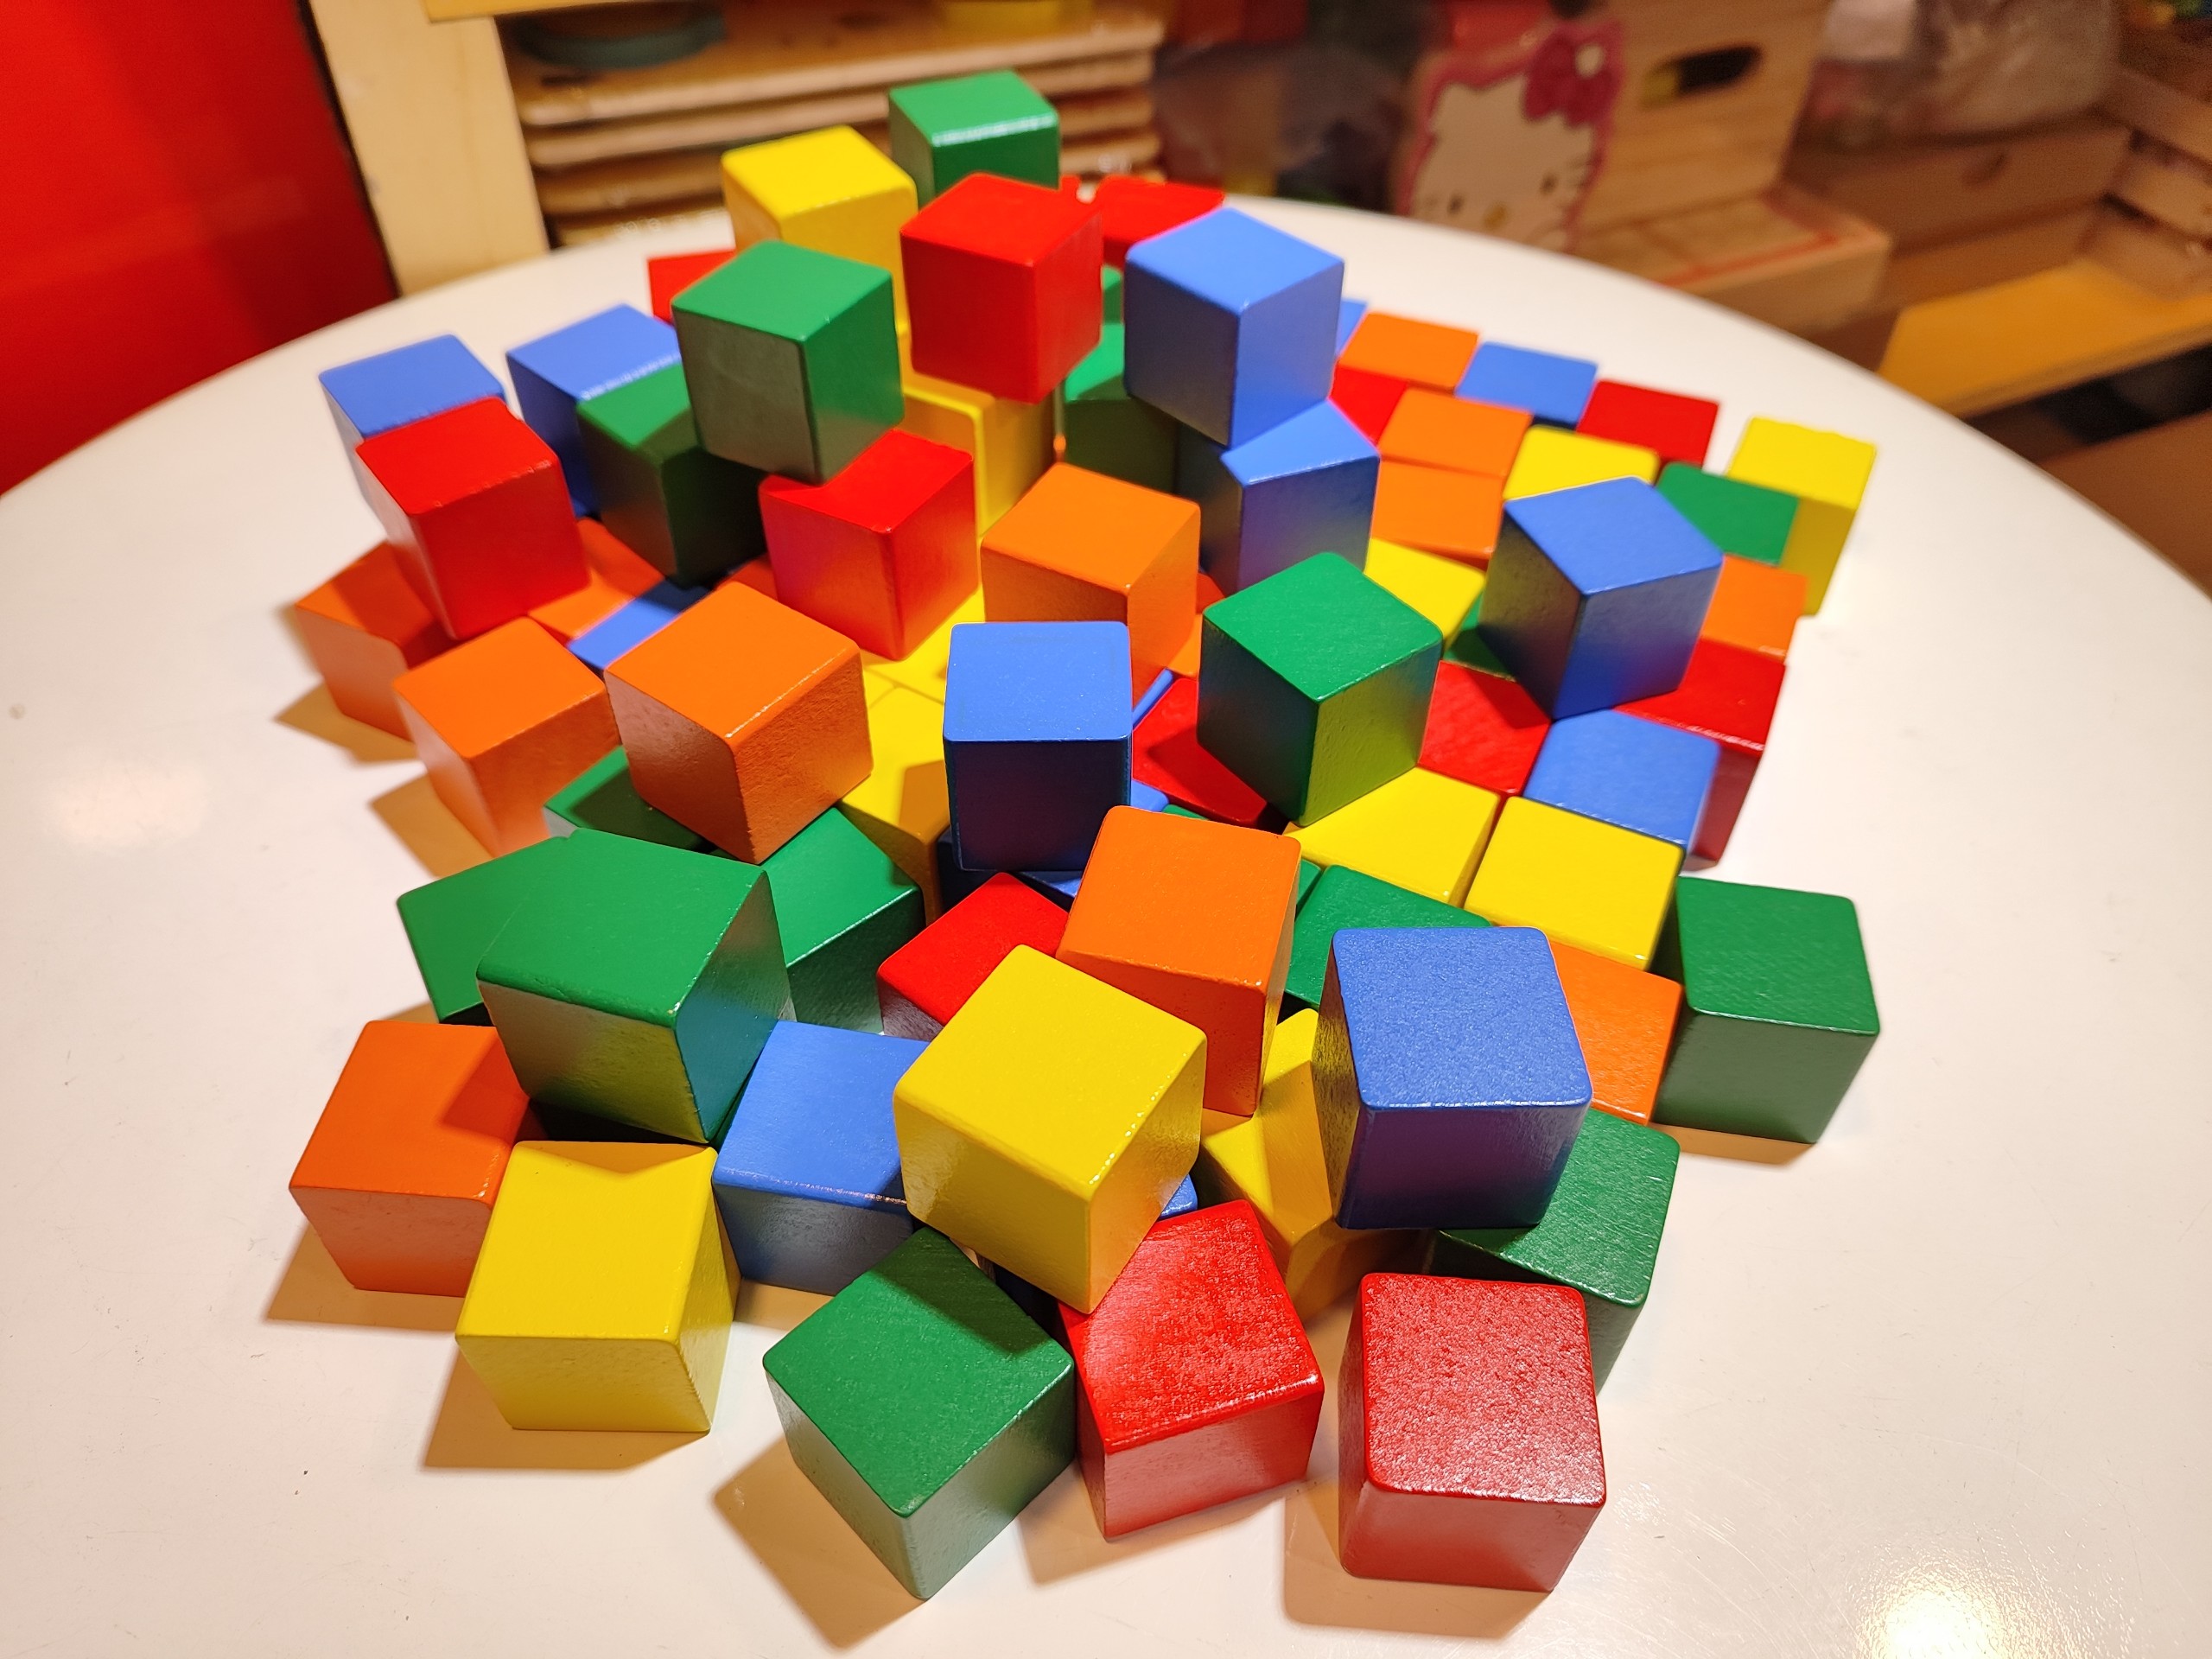 100 khối vuông gỗ màu 3 cm xếp hình đa năng chơi sáng tạo và học toán, vật liệu DIY, khối gỗ decor